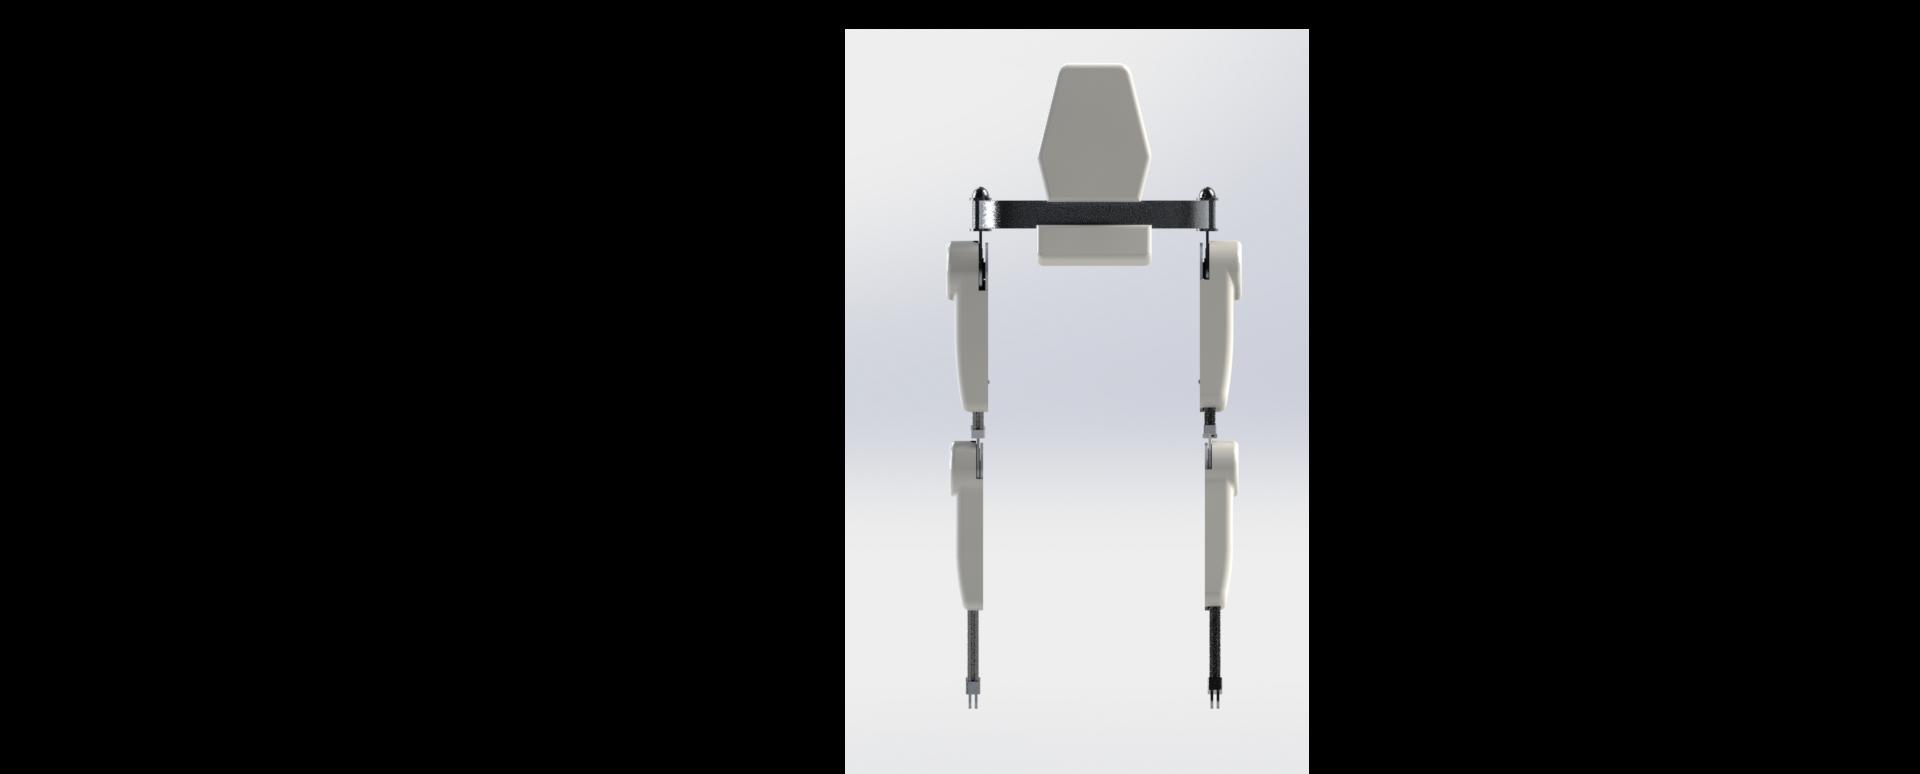 Rehabilitation Exoskeleton (based on HAL design) 3d model